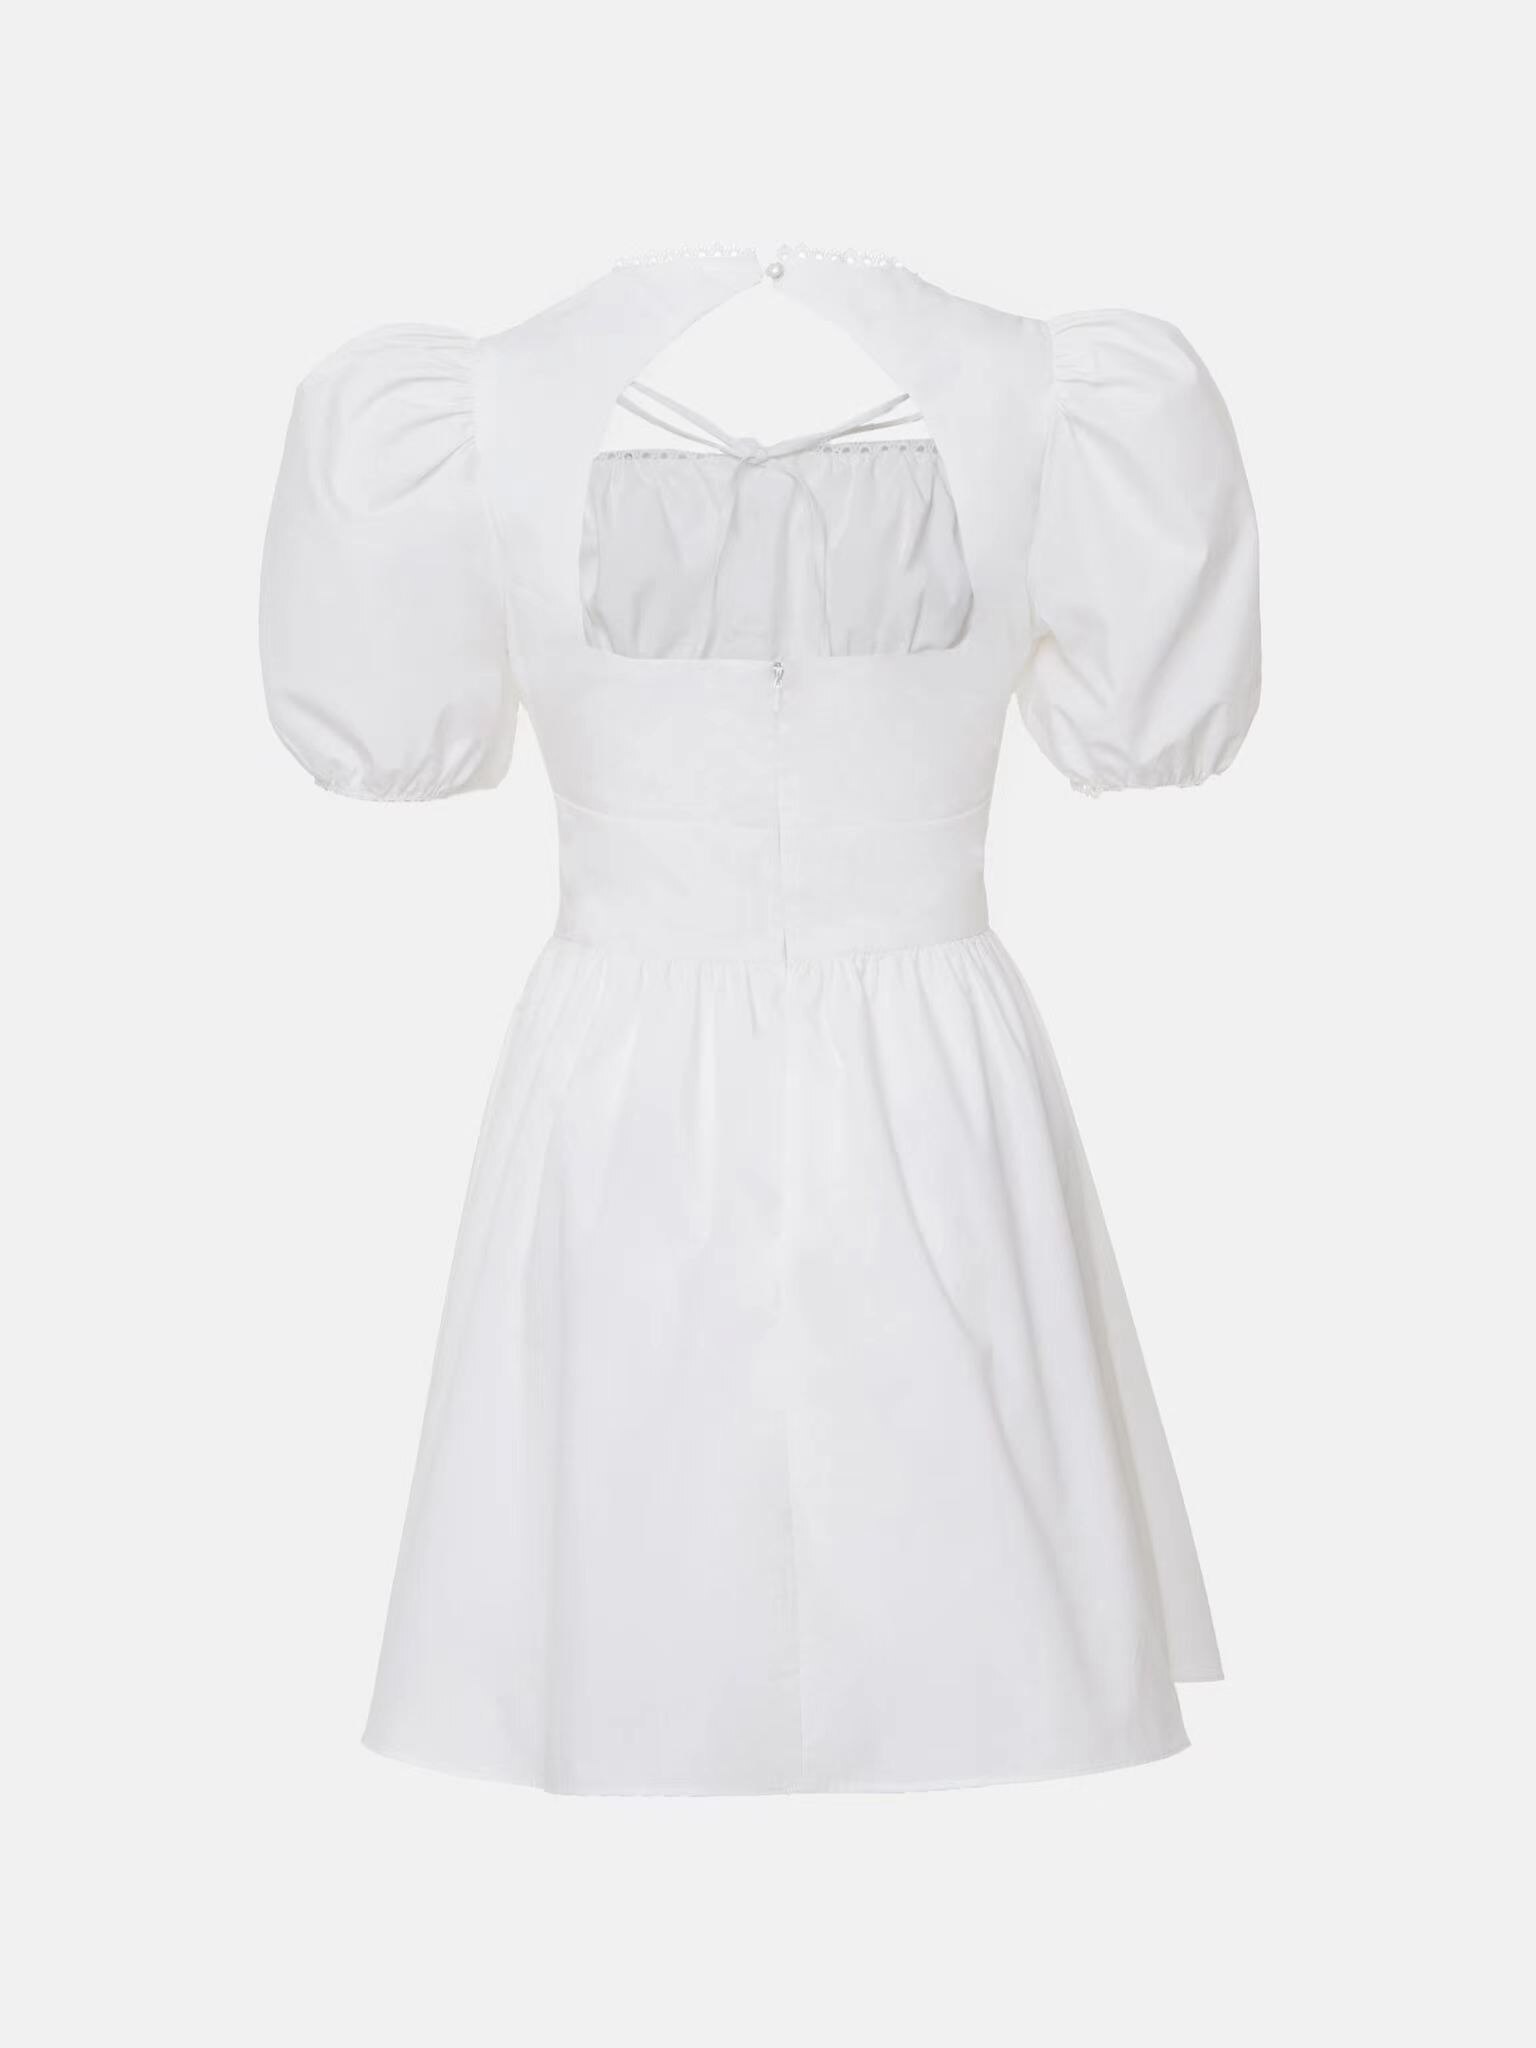 2022-New-Women-Sexy-Cutout-Mini-Dress-Summer-Fashion-Lady-Slash-Neck-White-Sundress-Puff-Sleeve-5